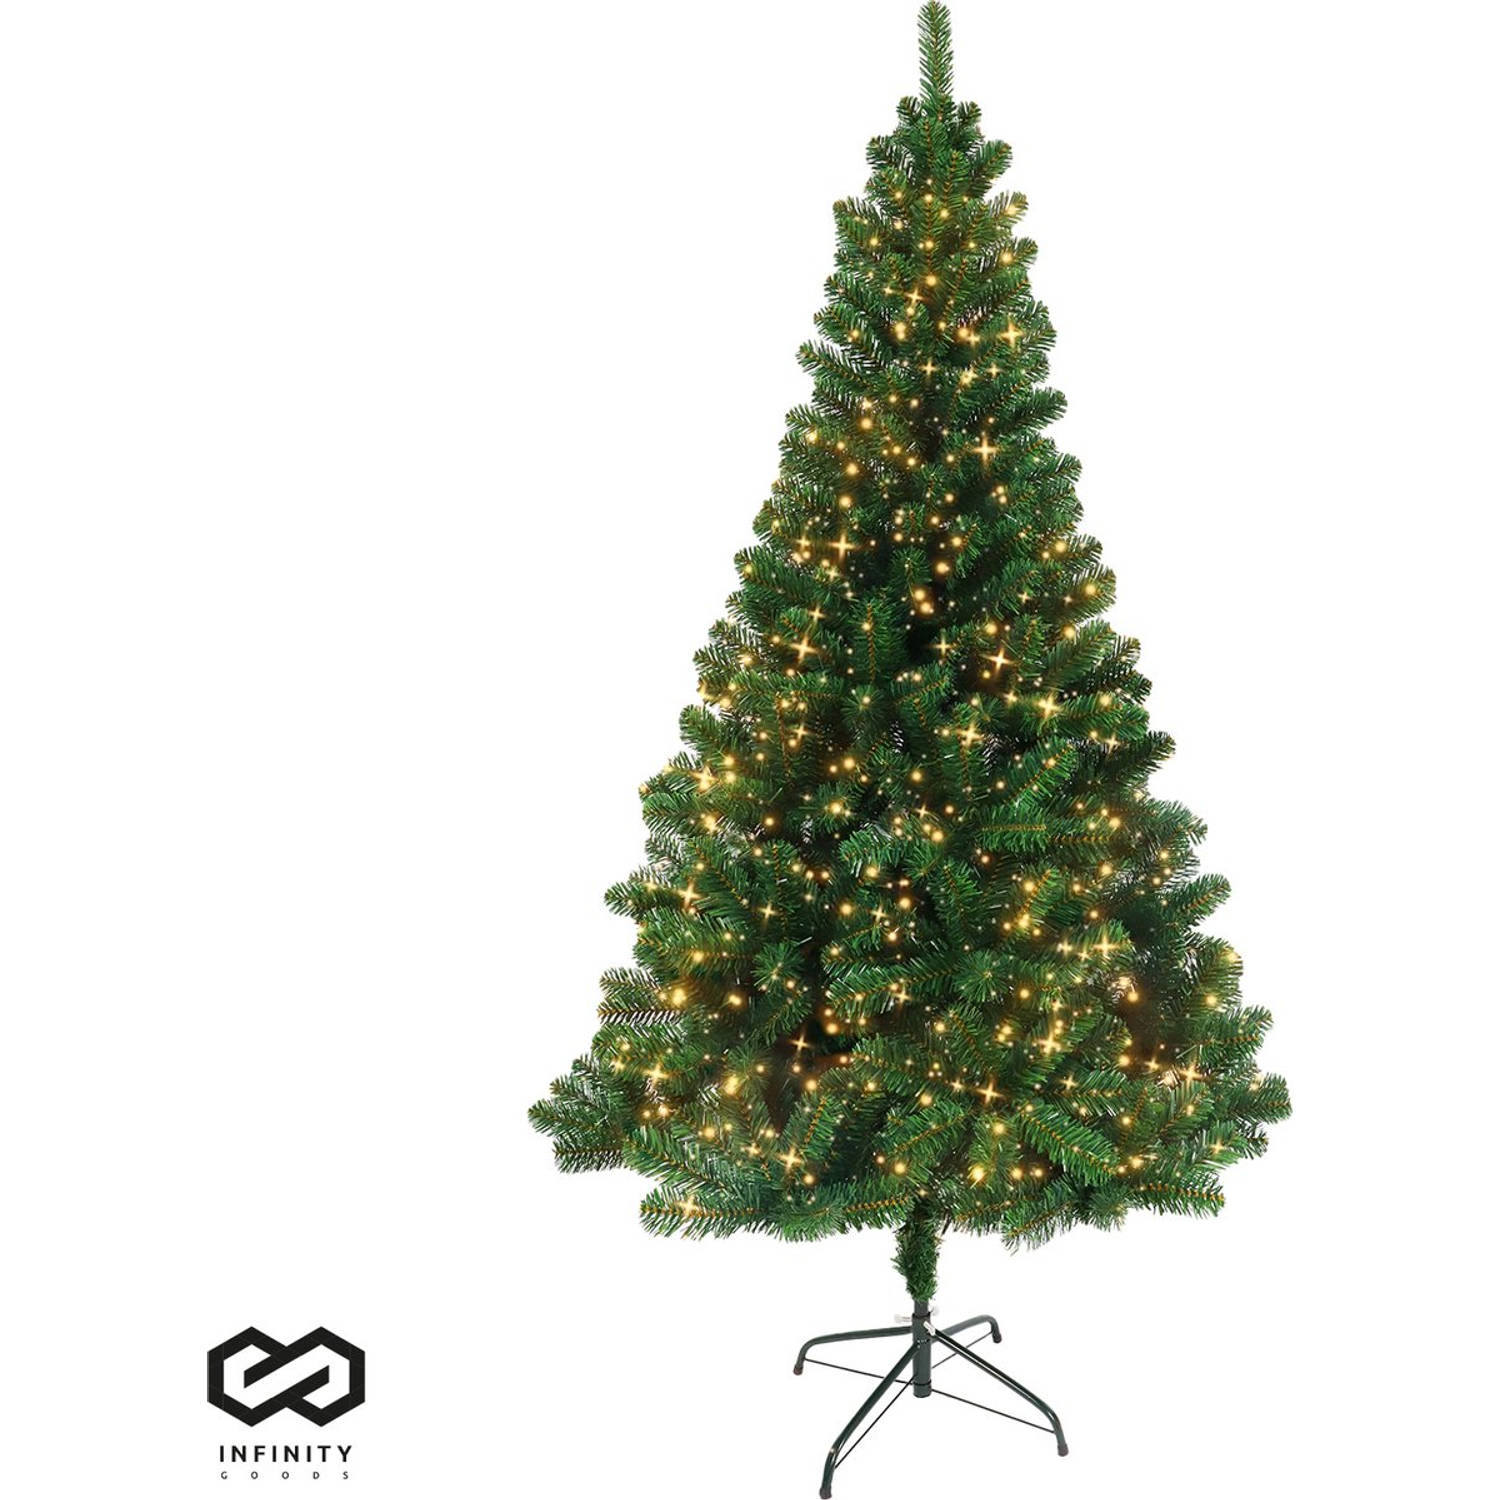 Infinity Goods Kunstkerstboom Met LED Verlichting - 240 cm - Realistische Kunststof Kerstboom - Metalen Standaard - Groen